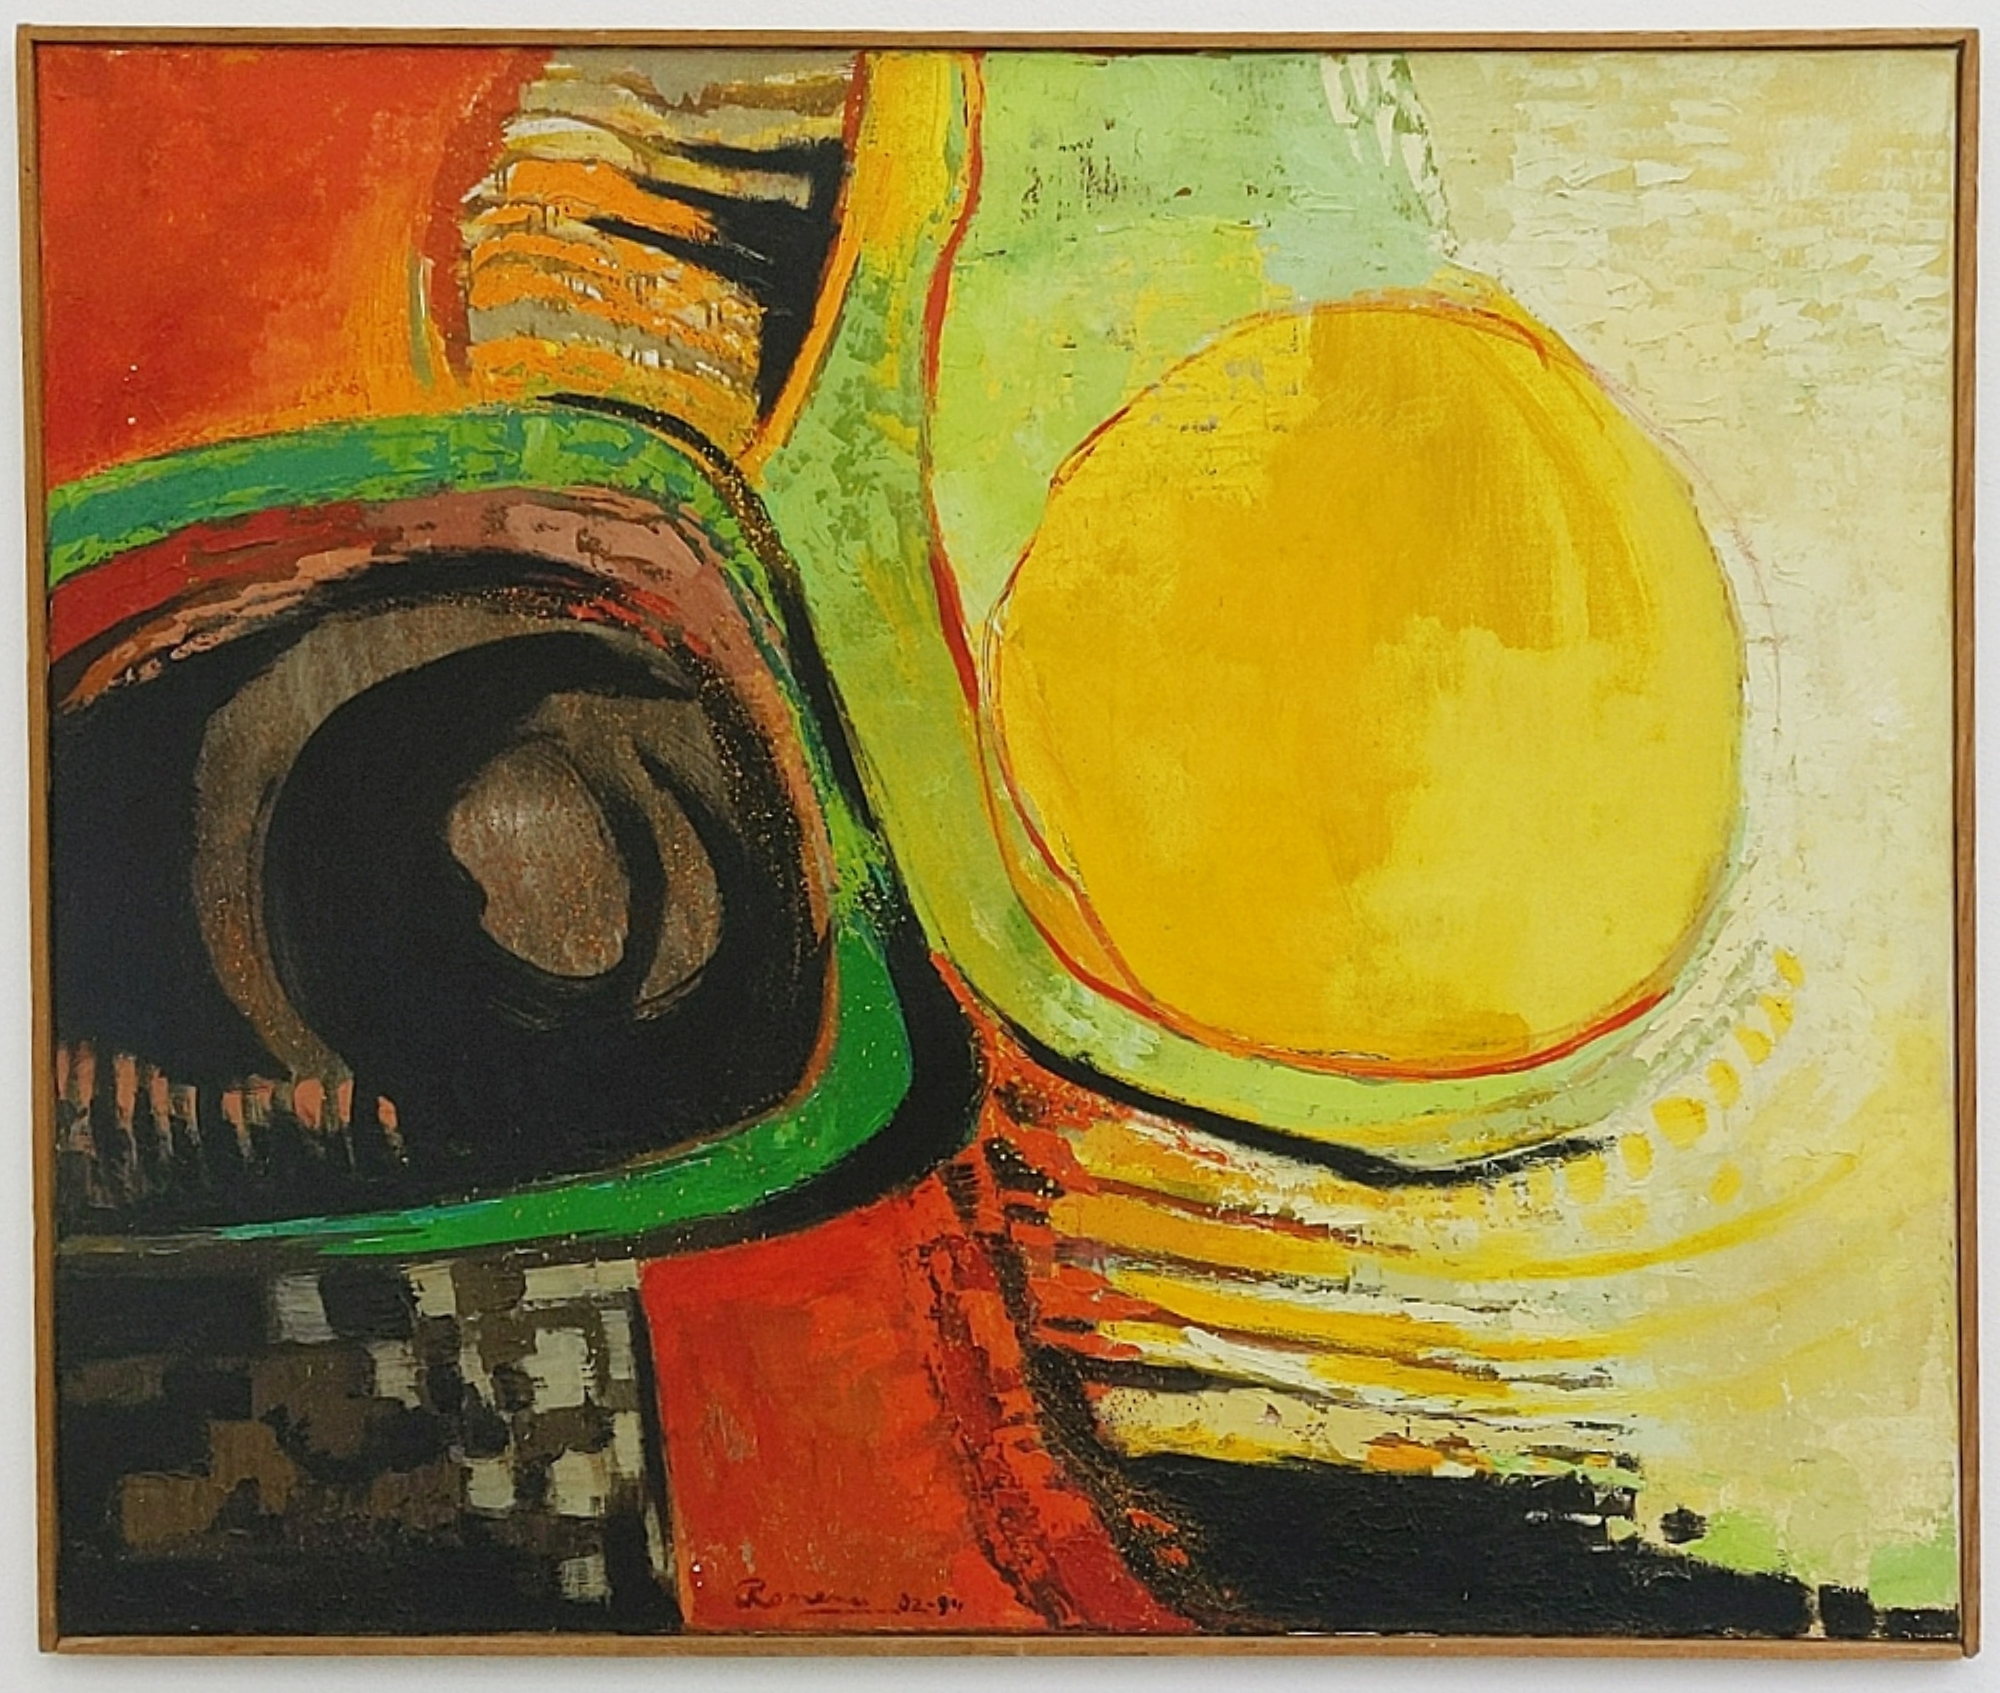 "Lumière", 1982/84, olja på duk, 122 x 103 cm	
